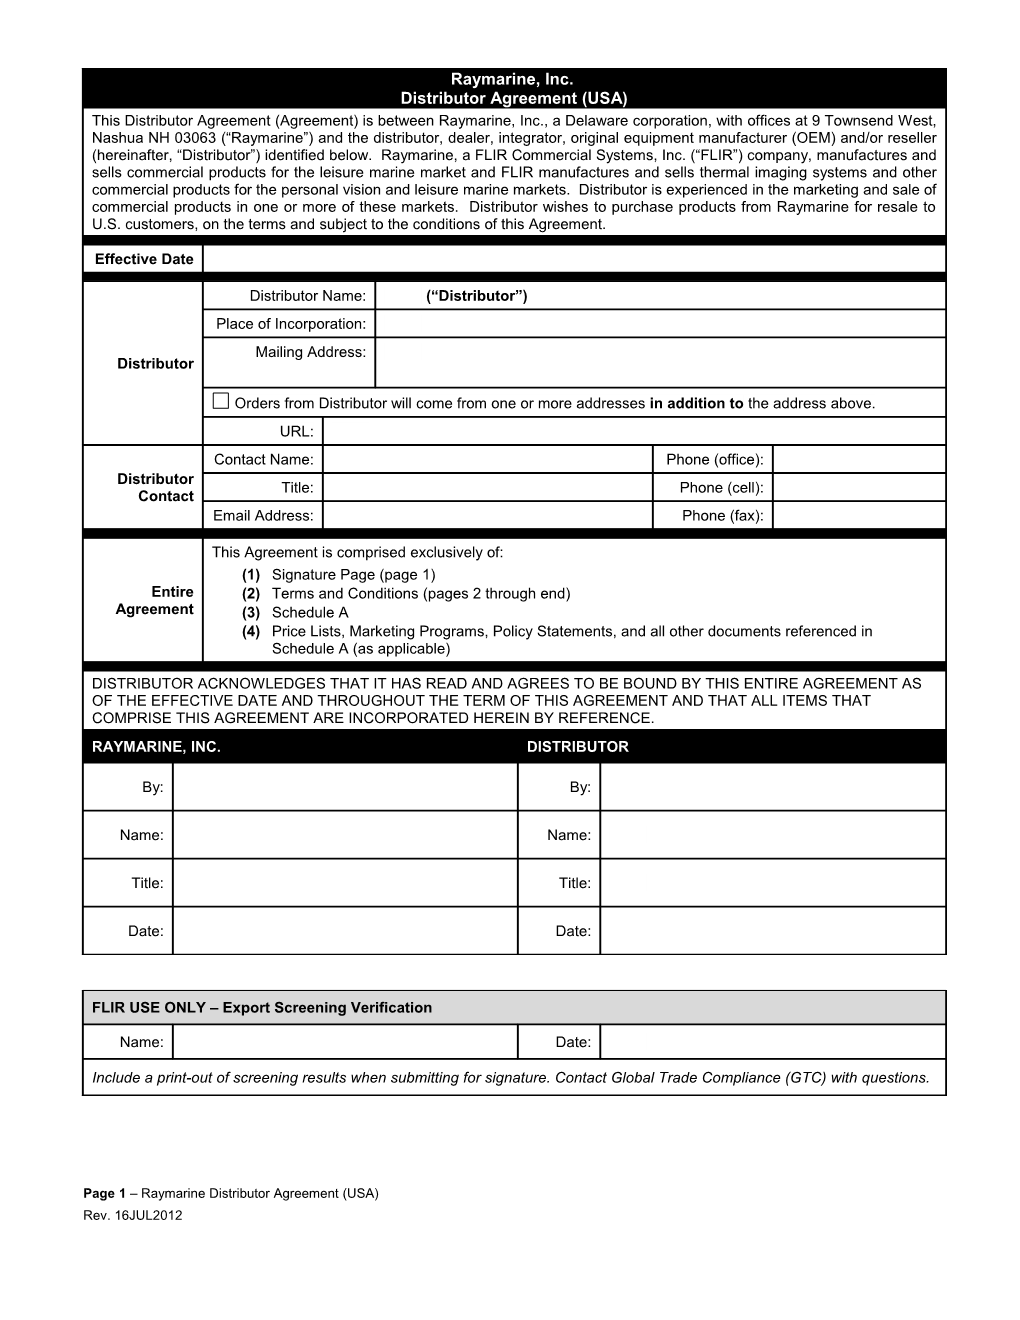 Page 1 Raymarine Distributor Agreement (USA)